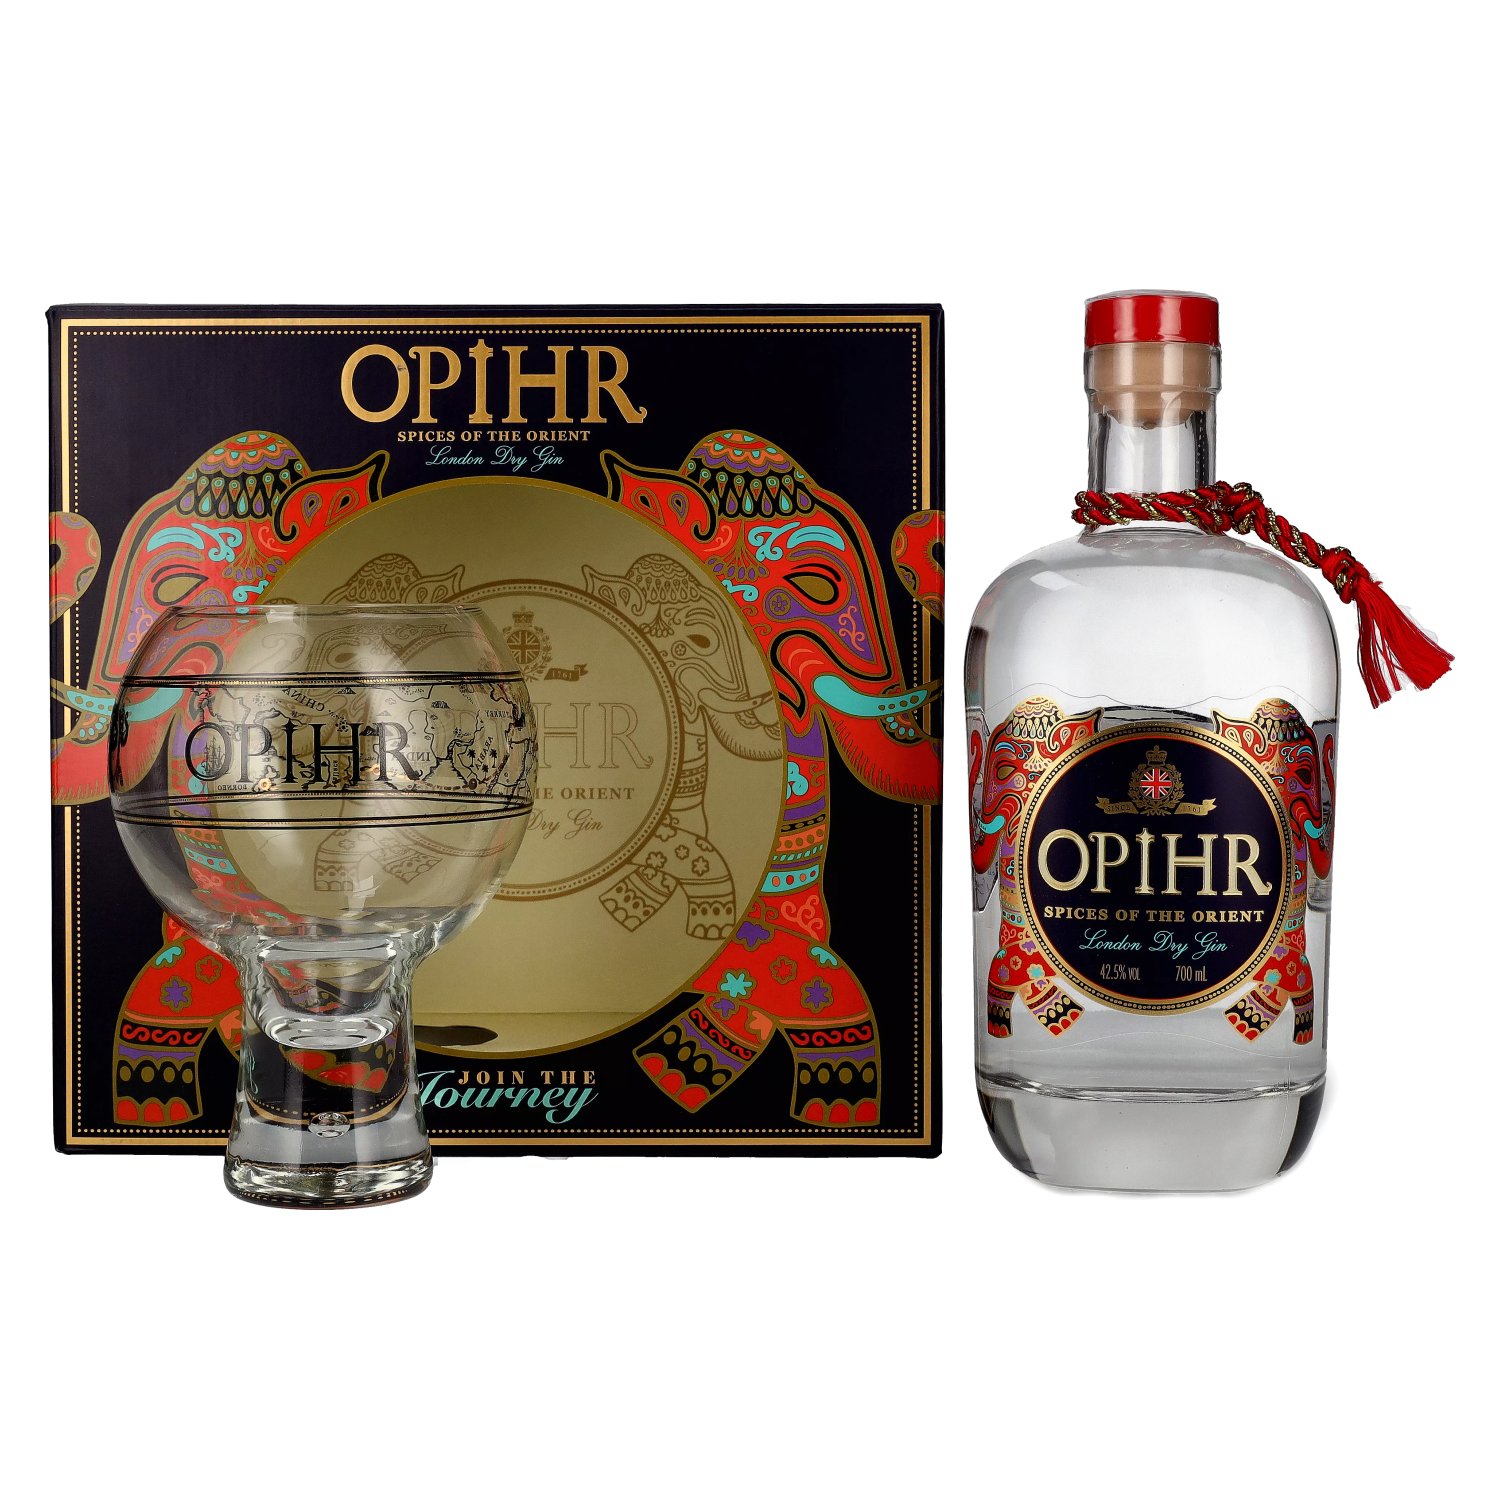 Opihr ORIENTAL SPICED London Dry Gin 42,5% Vol. 0,7l in Geschenkbox mit  Globe-Glas